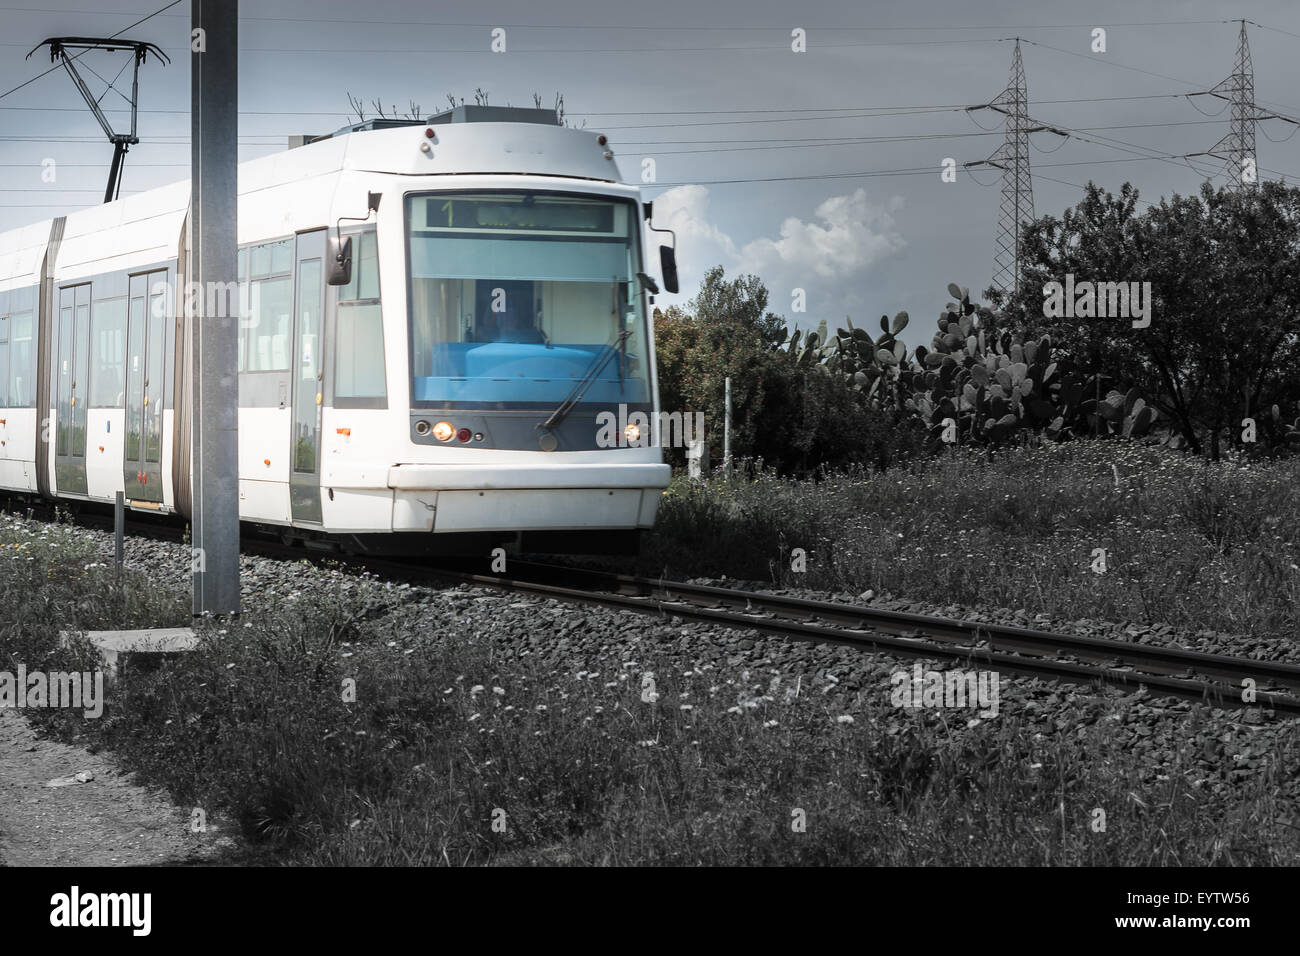 Pilone del treno Velocità. Immagine presa per il passaggio di un treno. Foto Stock